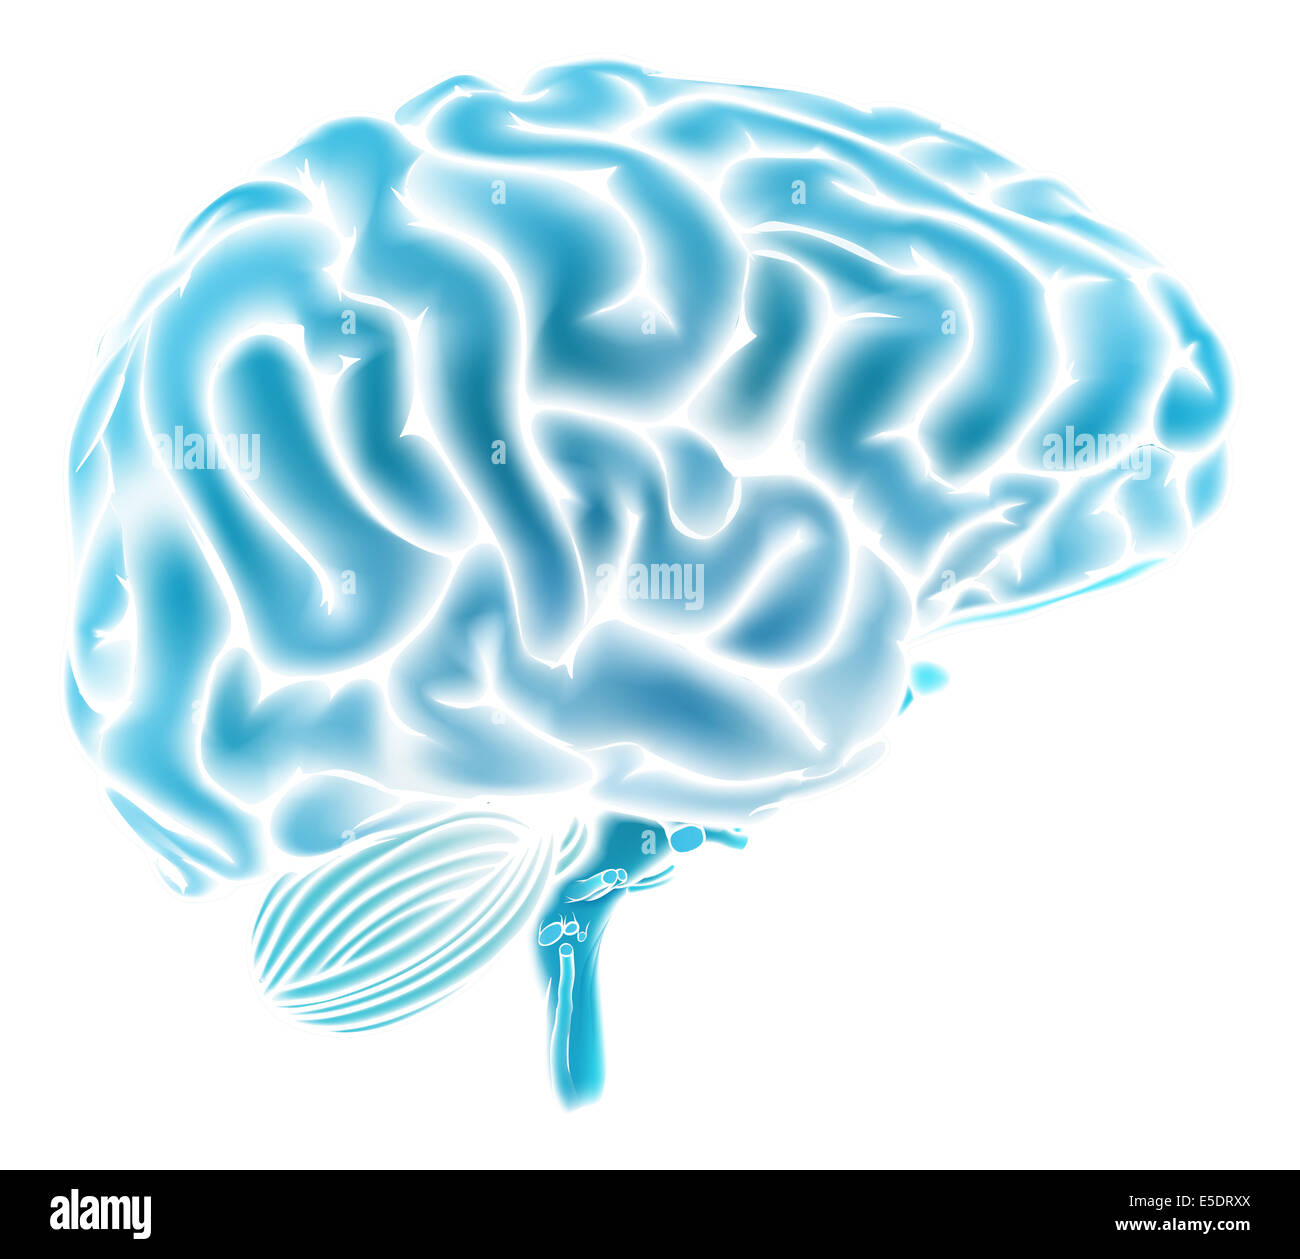 Une illustration conceptuelle d'un cerveau humain d'un bleu éclatant. Pourrait être un concept pour une réflexion ou de renseignements Banque D'Images